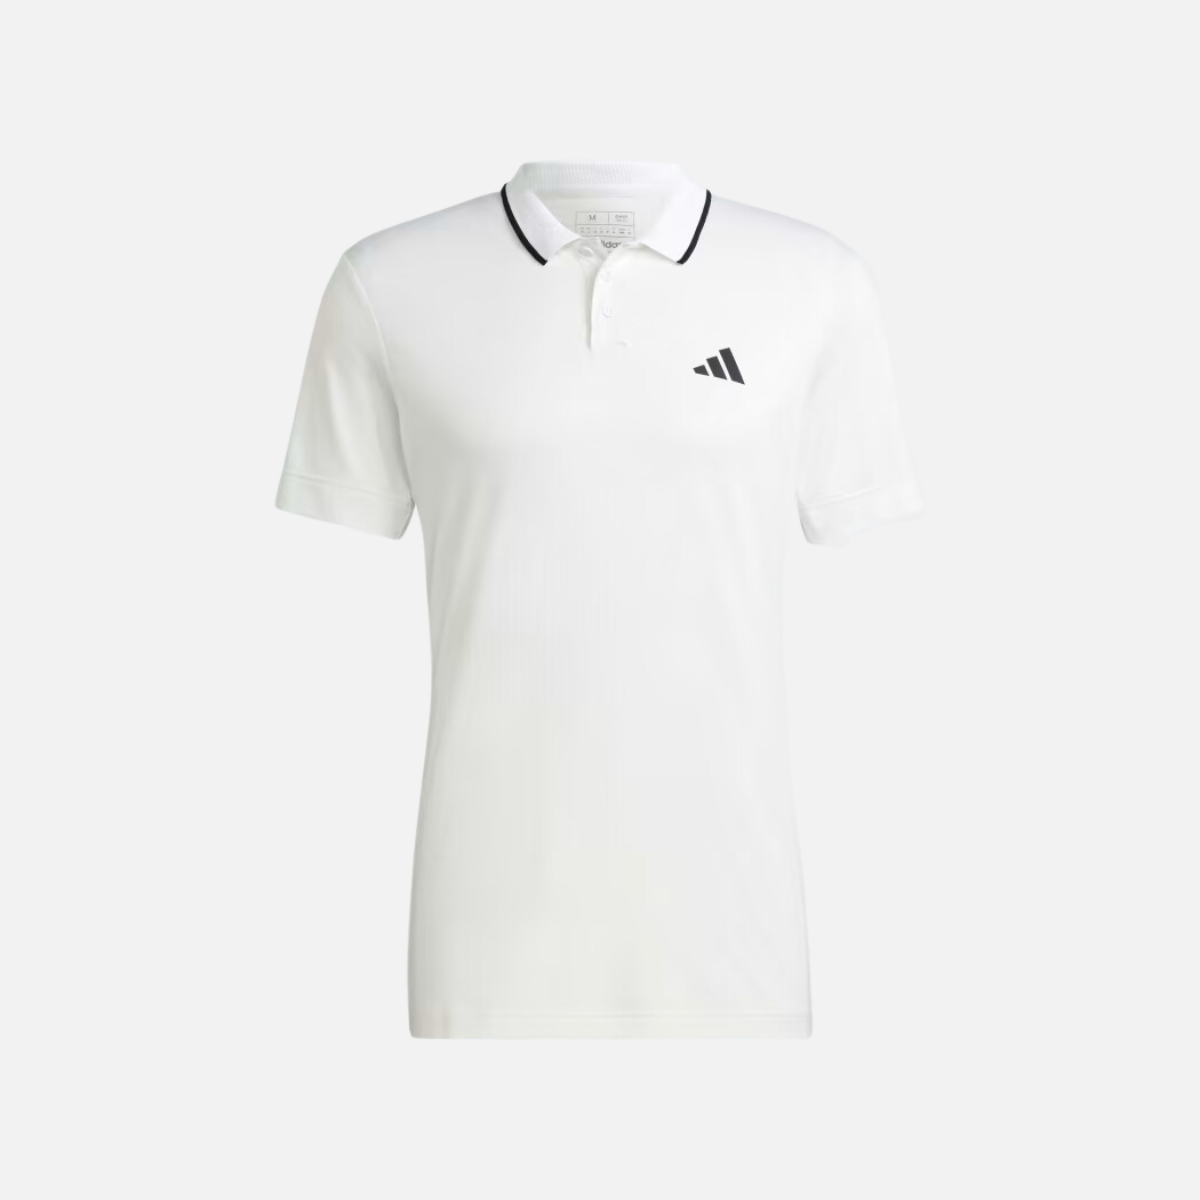 Adidas Freelift Men's Tennis Polo Shirt -White